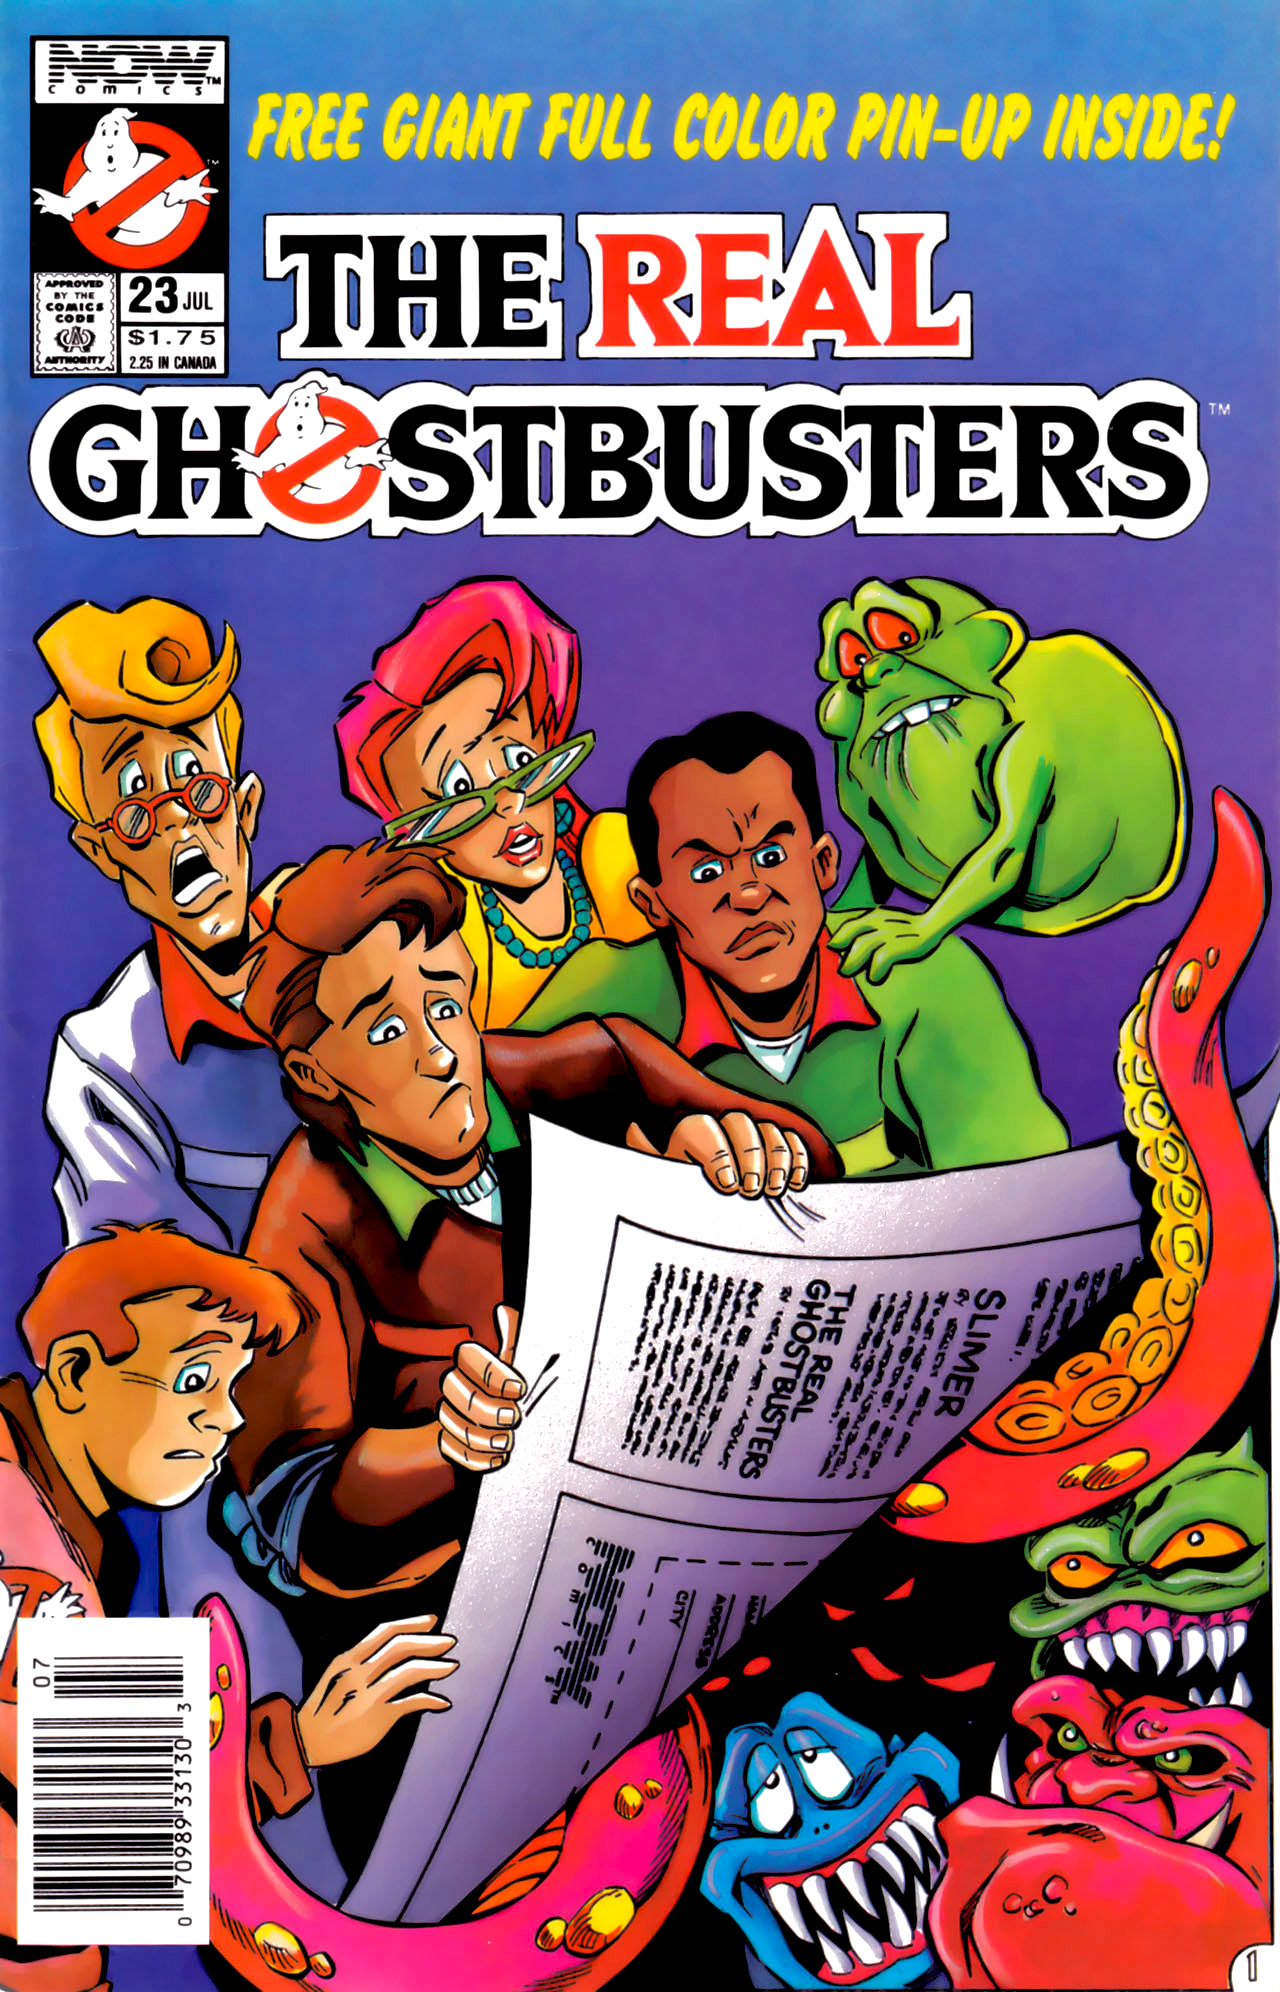 Ghostbusters (comics) - Wikipedia